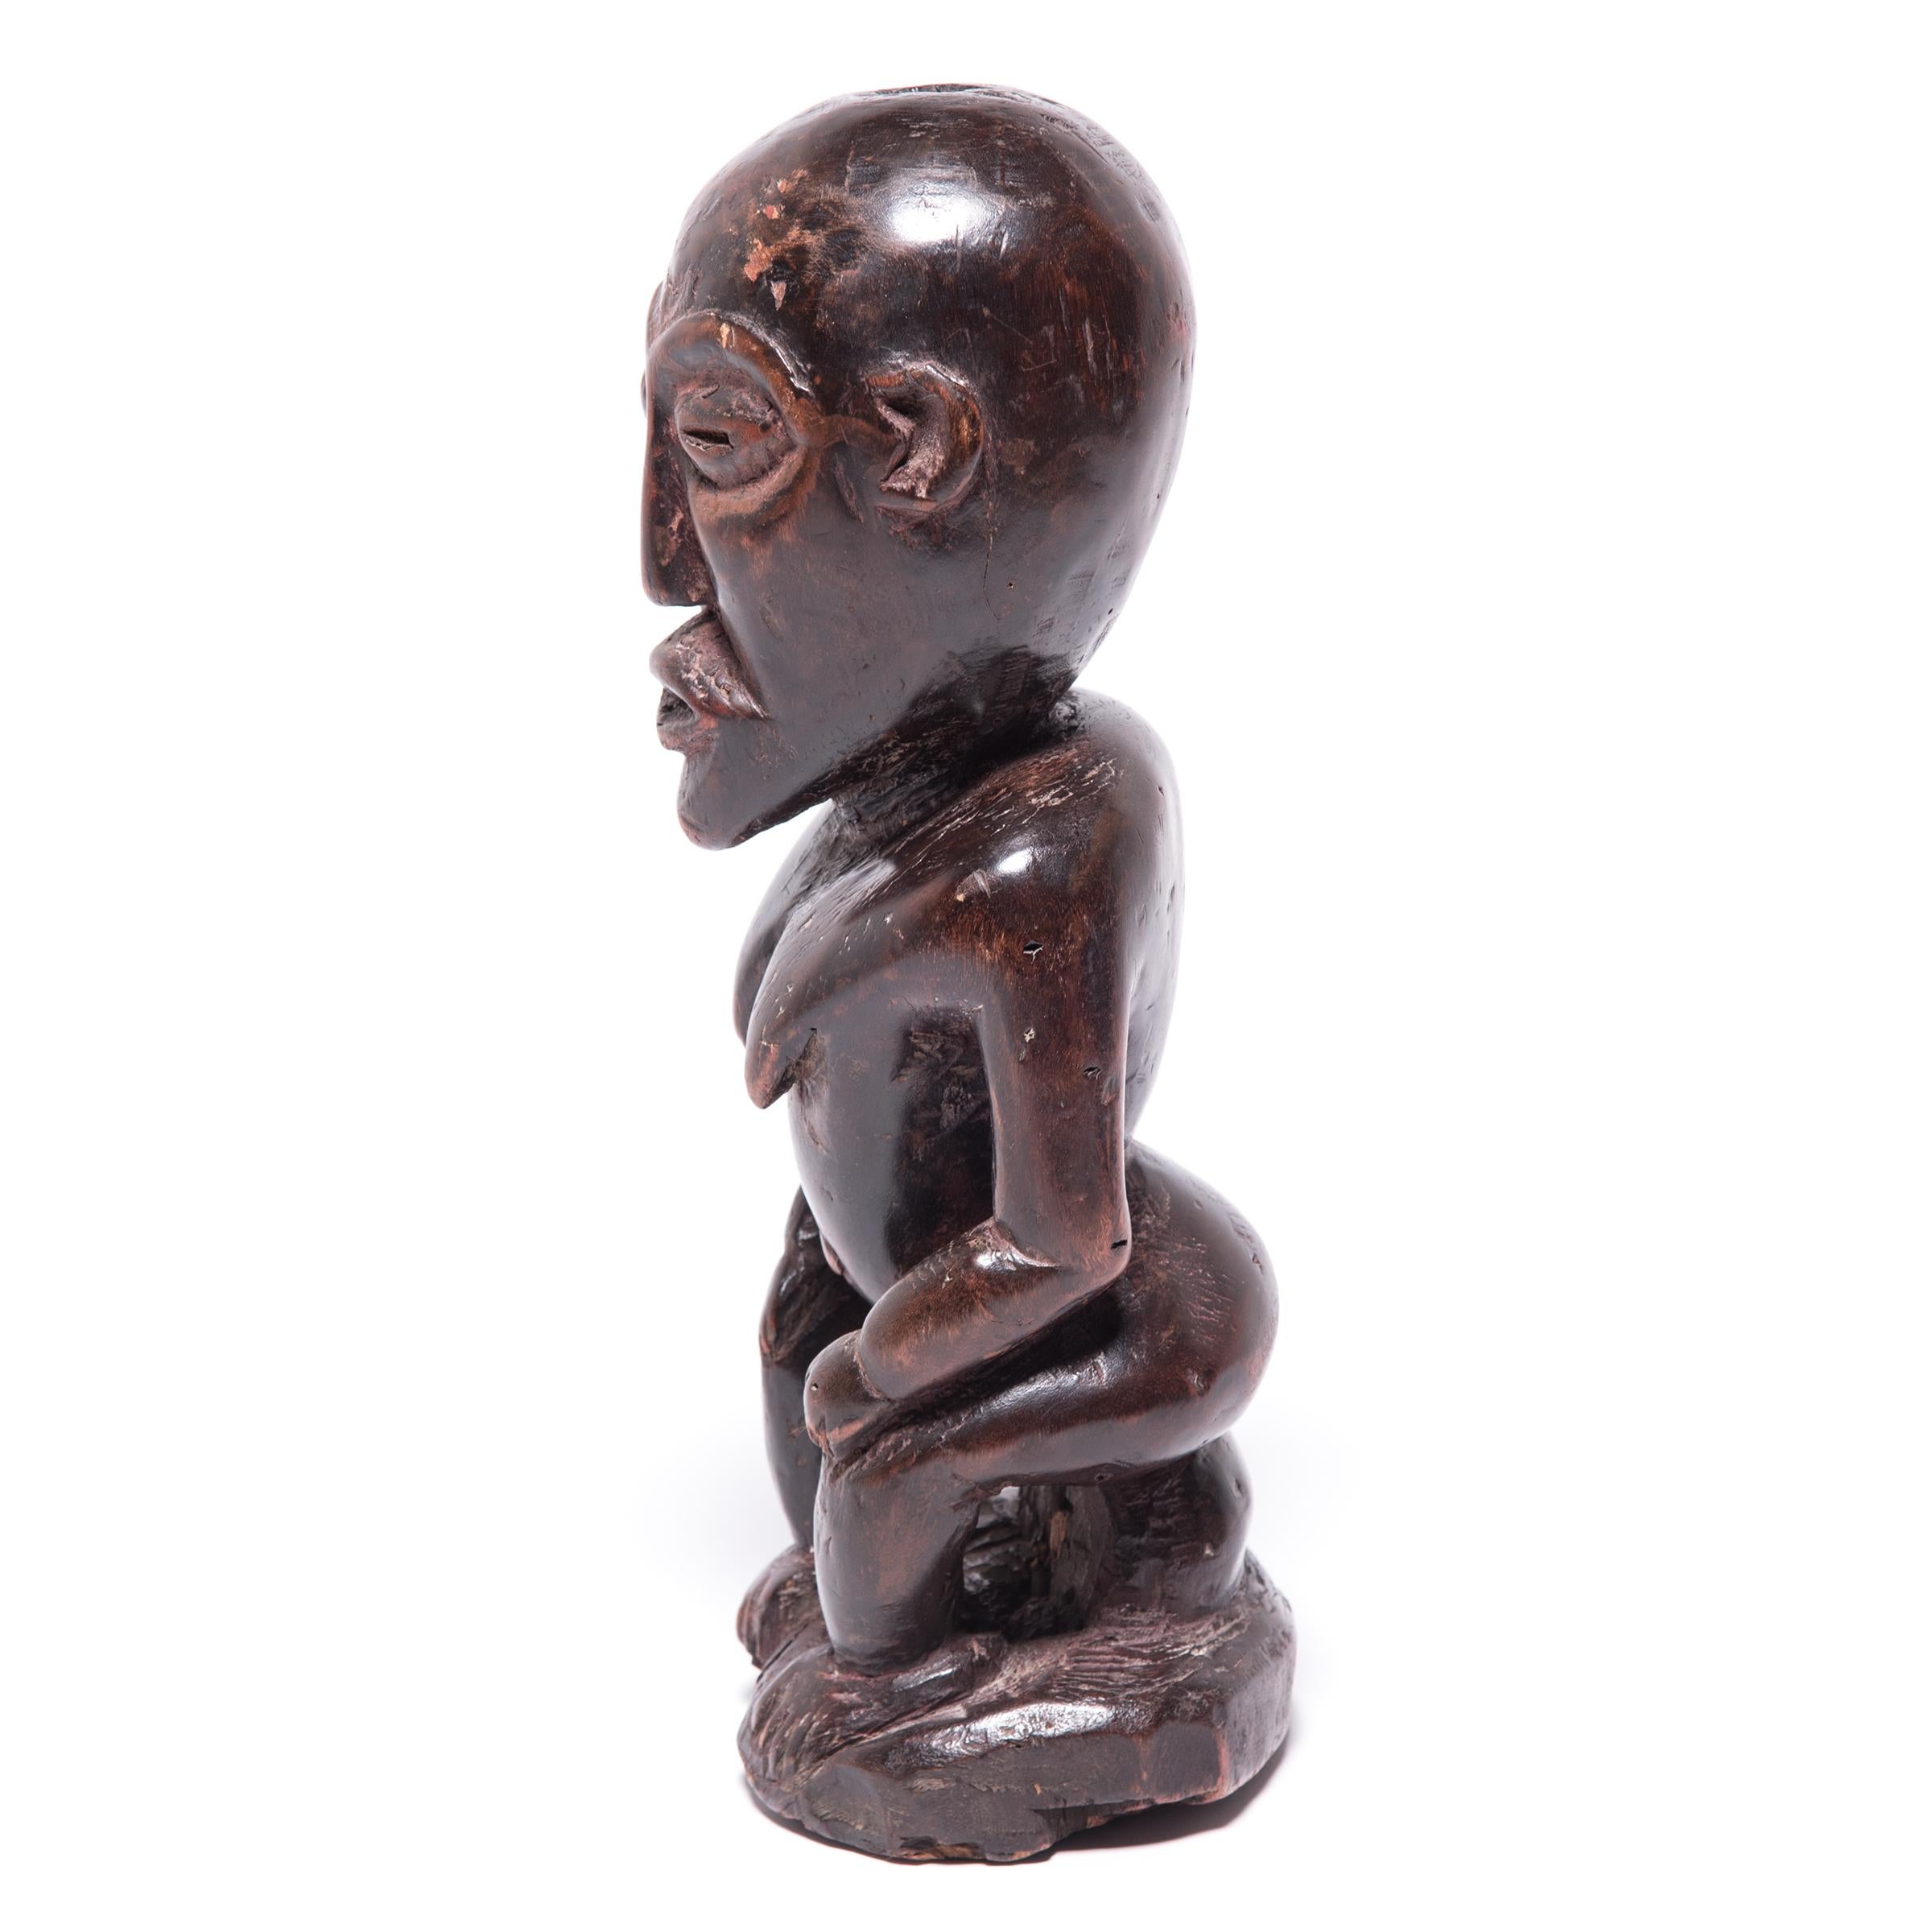 Les artisans de la tribu Luba étaient réputés pour la fluidité organique de leur style de sculpture. Cet exemple montre clairement la transition en douceur d'un aspect à l'autre, tout en conservant un éclat et une surface uniques. La légère